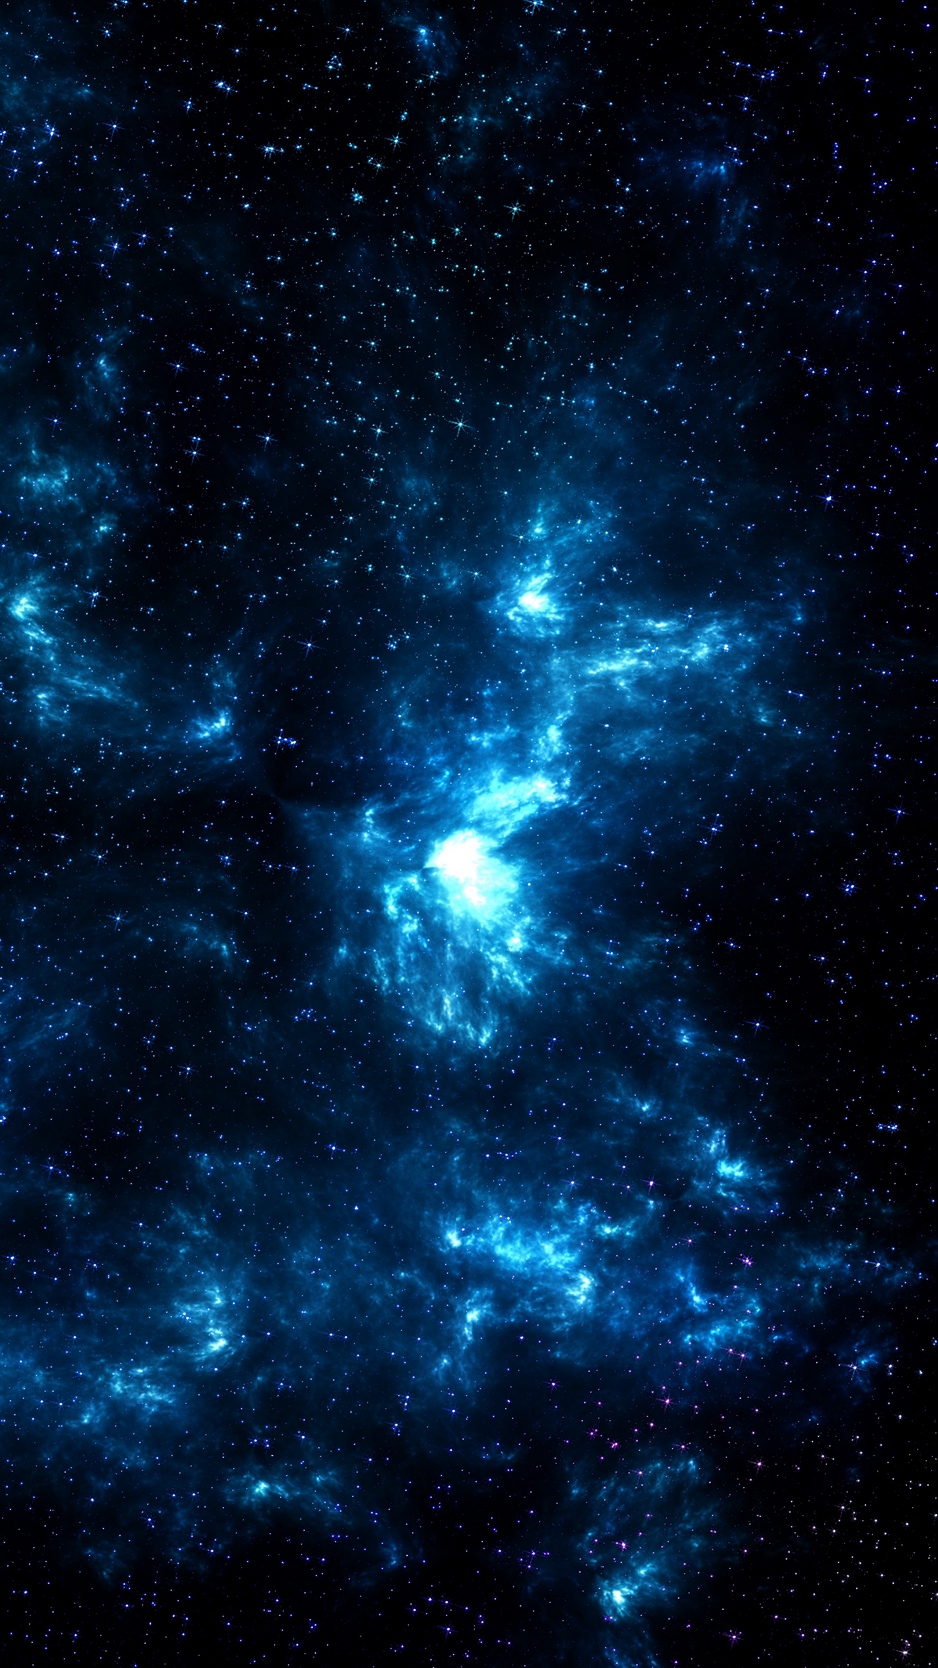 Thiên hà màu xanh: Tận hưởng cảm giác đắm chìm giữa vũ trụ với hình ảnh Thiên hà màu xanh. Từ những chùm sao lấp lánh cho đến những vệ tinh quay quanh, hơn cả tuyệt vời khi những hình ảnh của chúng tôi mang đến cho bạn cảm giác phiêu lưu và đầy kích thích. Hãy tìm hiểu và khám phá ngay bây giờ!